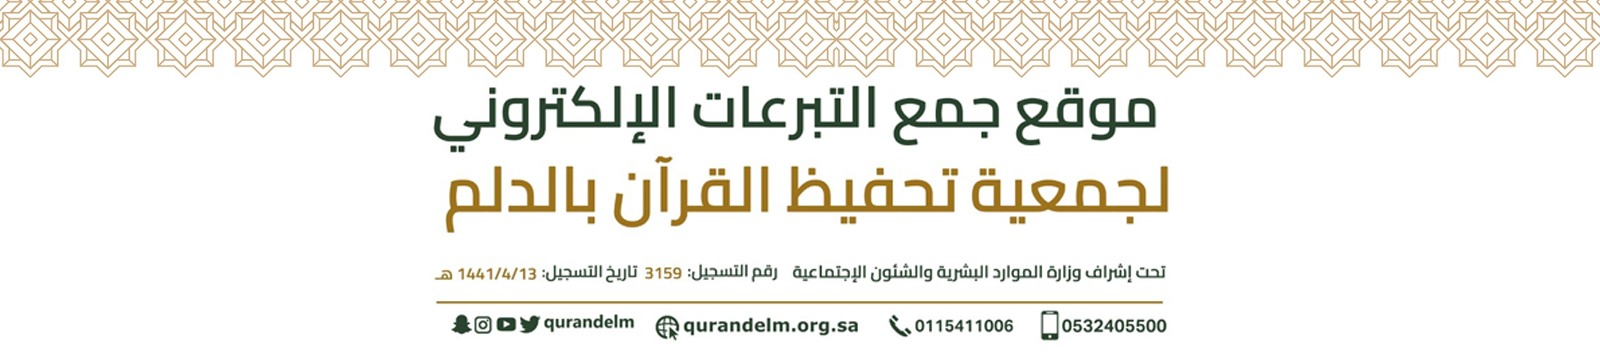 الجمعية الخيرية لتحفيظ القرآن الكريم بالدلم